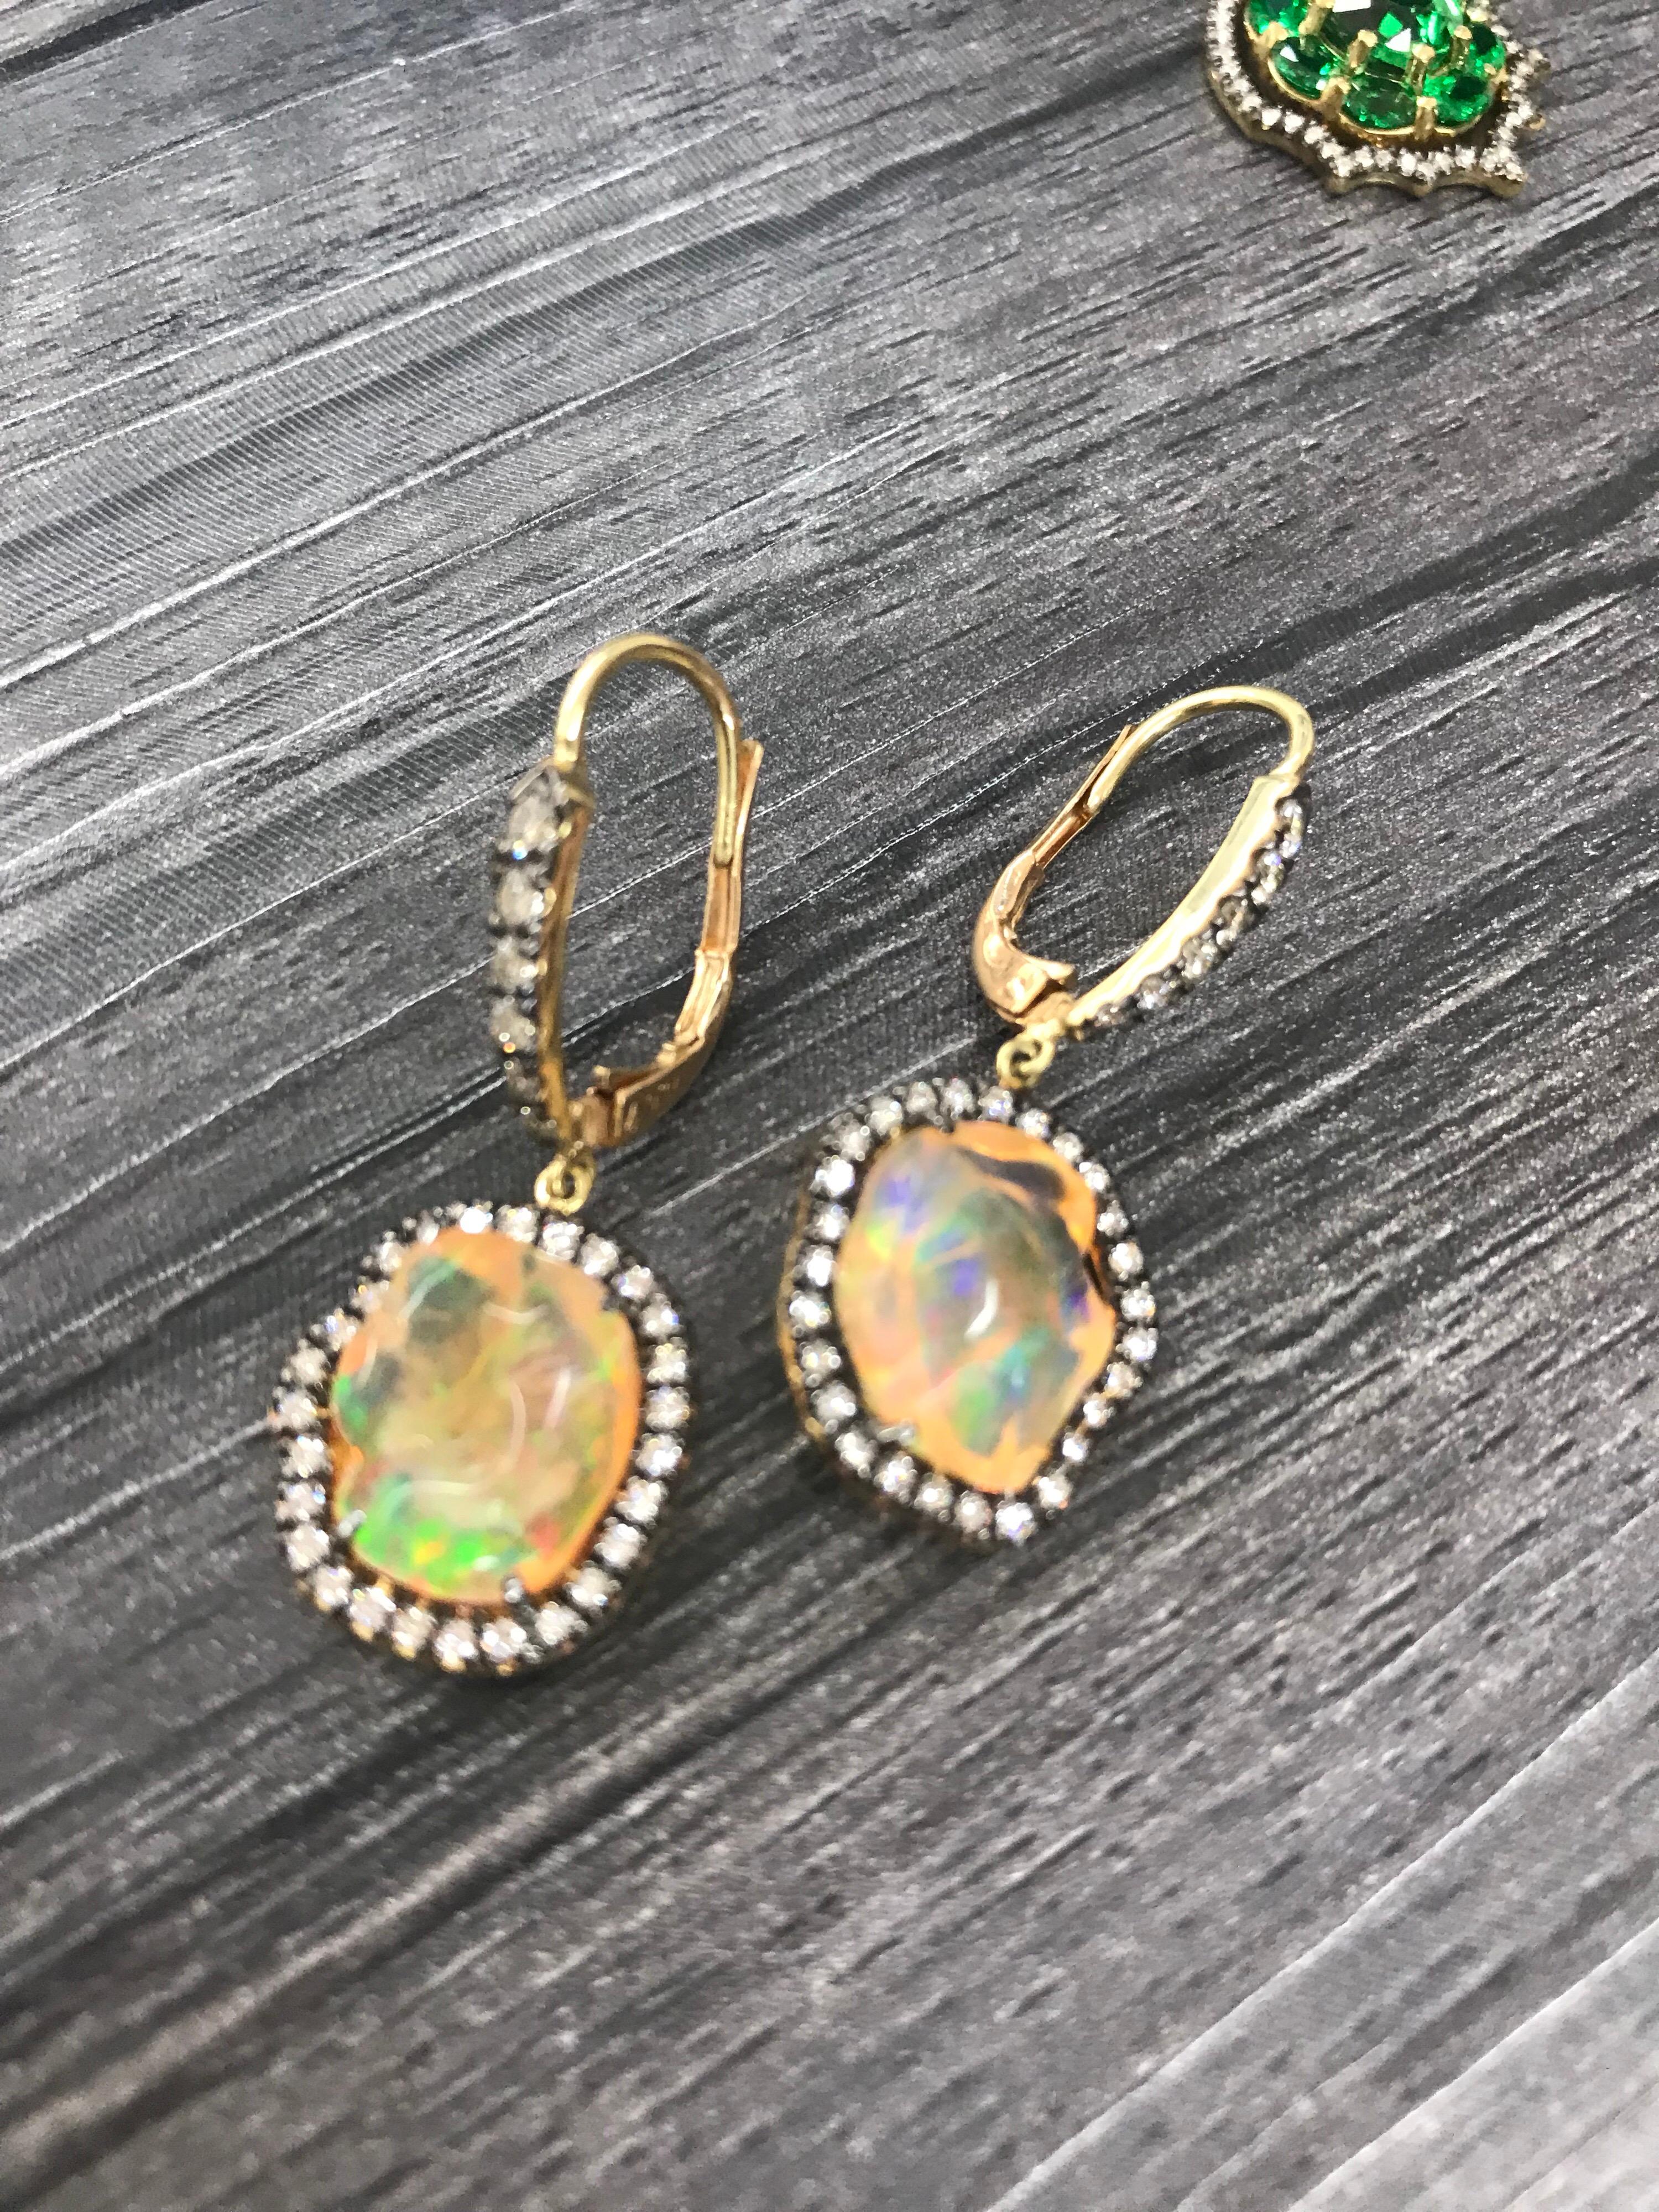 Die Freiform-Ohrringe aus mexikanischem Opal, umgeben von farblosen Diamanten in 18 K Gelbgold, mit Diamanten besetzt. Die intensiven Farben dieser Edelsteine haben ihnen den Spitznamen Feueropal eingebracht. Diese bemerkenswerten Steine zeigen ein